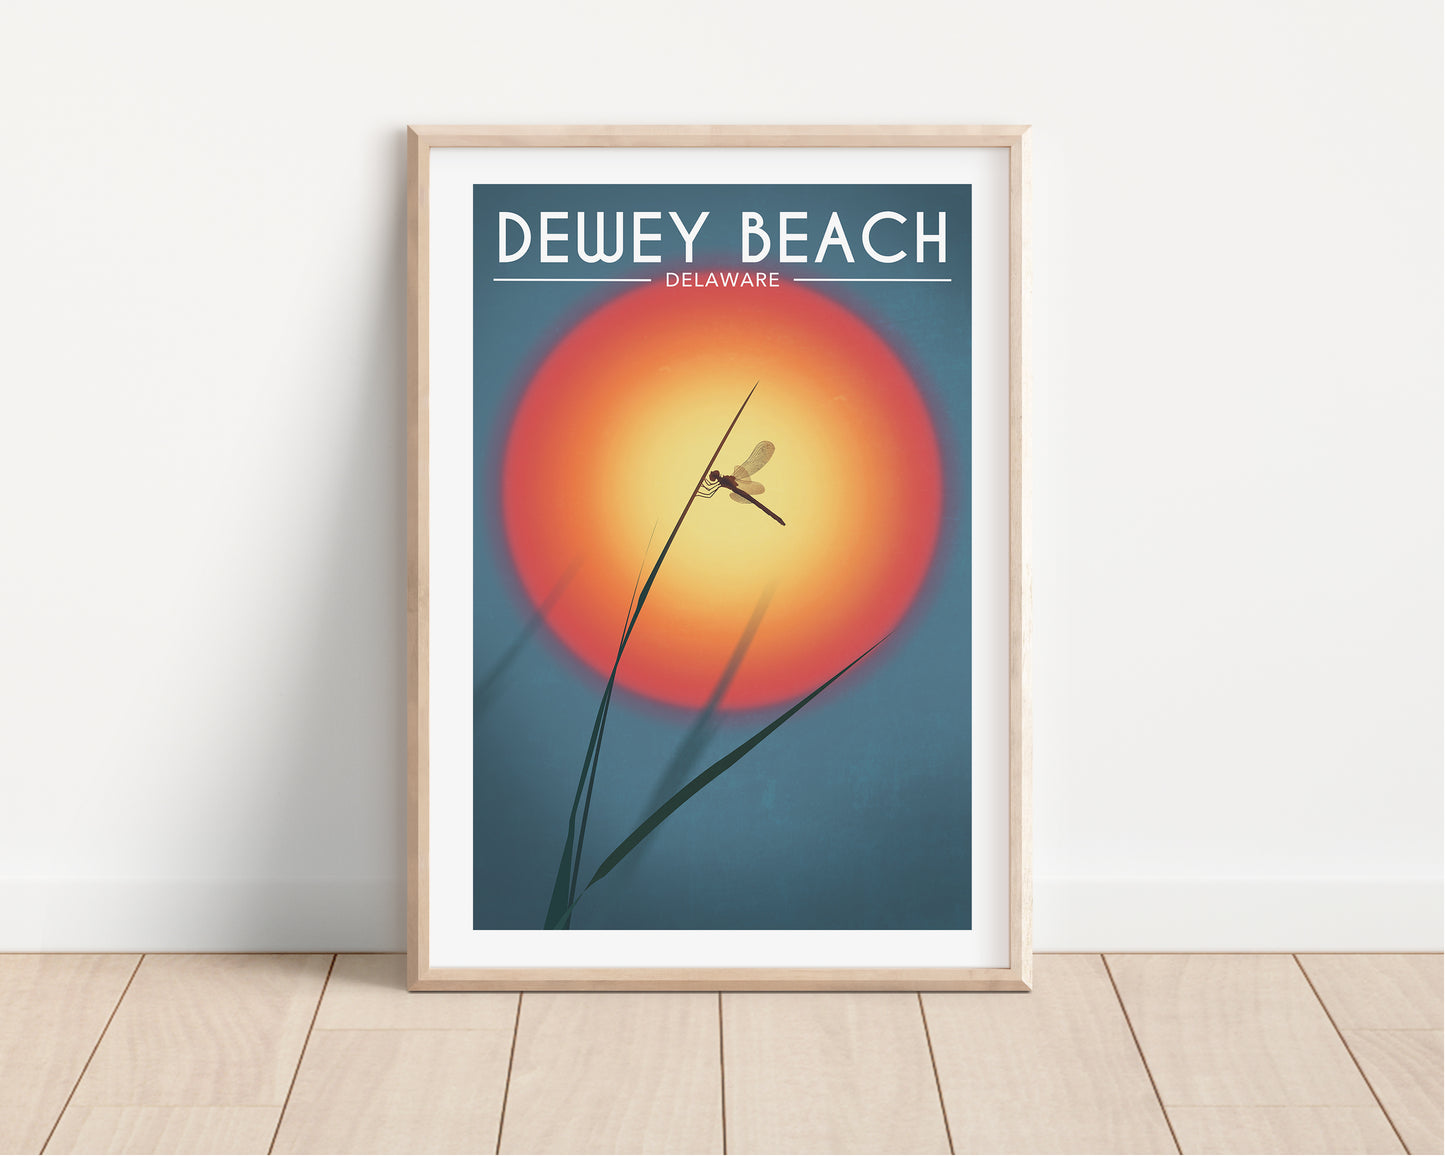 Dewey Beach Wildfire Dragonfly